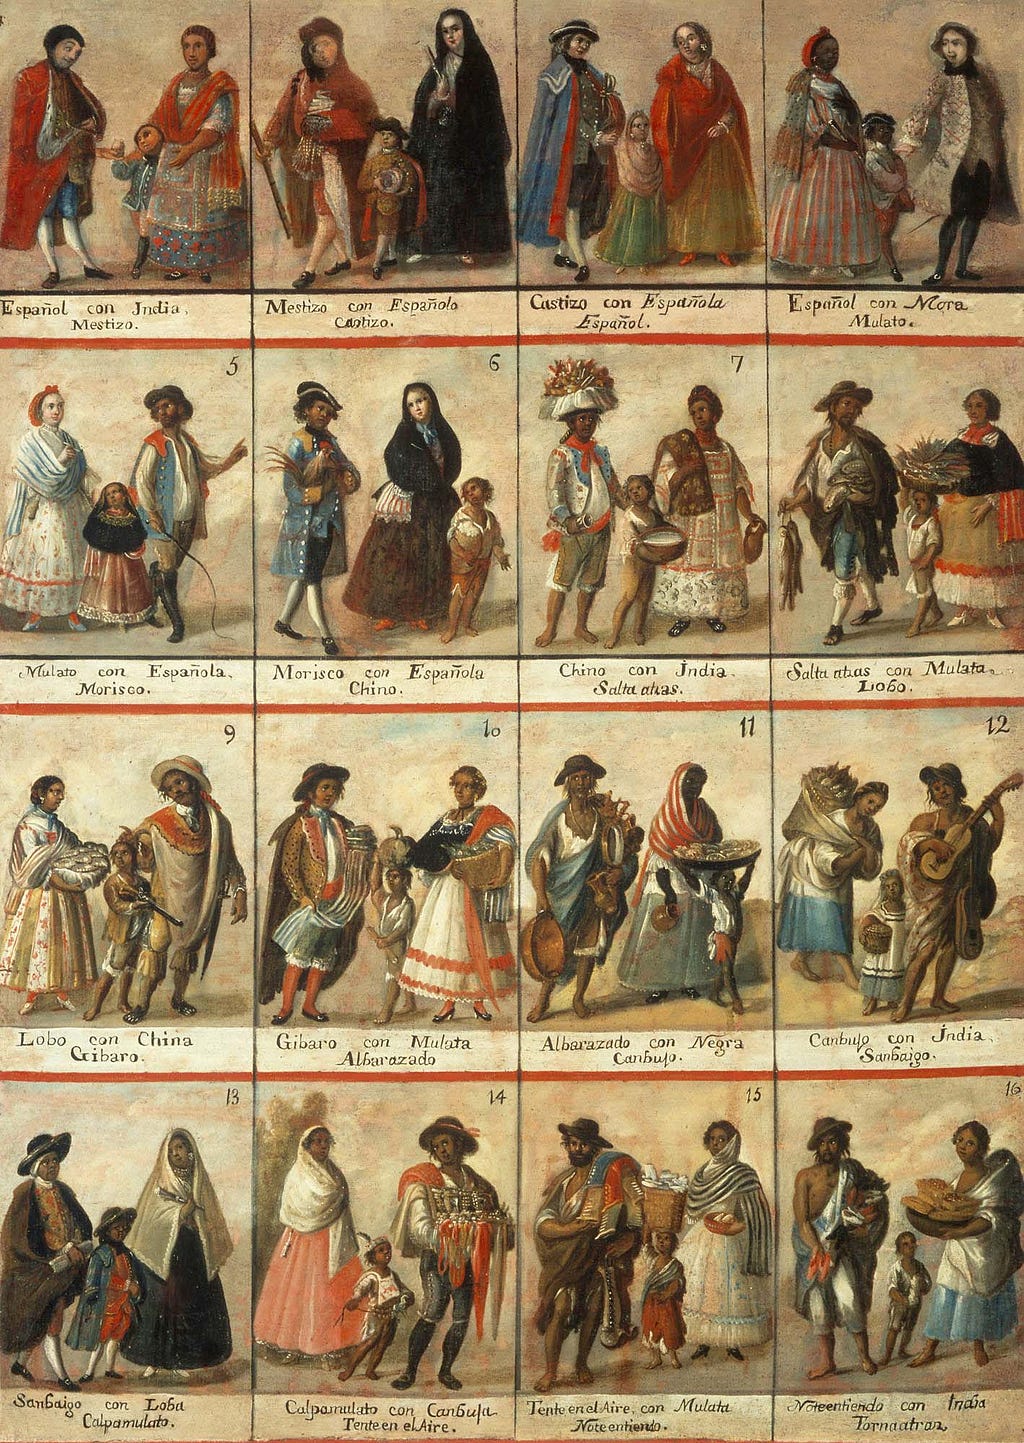 Las Castas. 18th century, oil on canvas, 148 x 104 cm (Museo Nacional del Virreinato, Mexico)